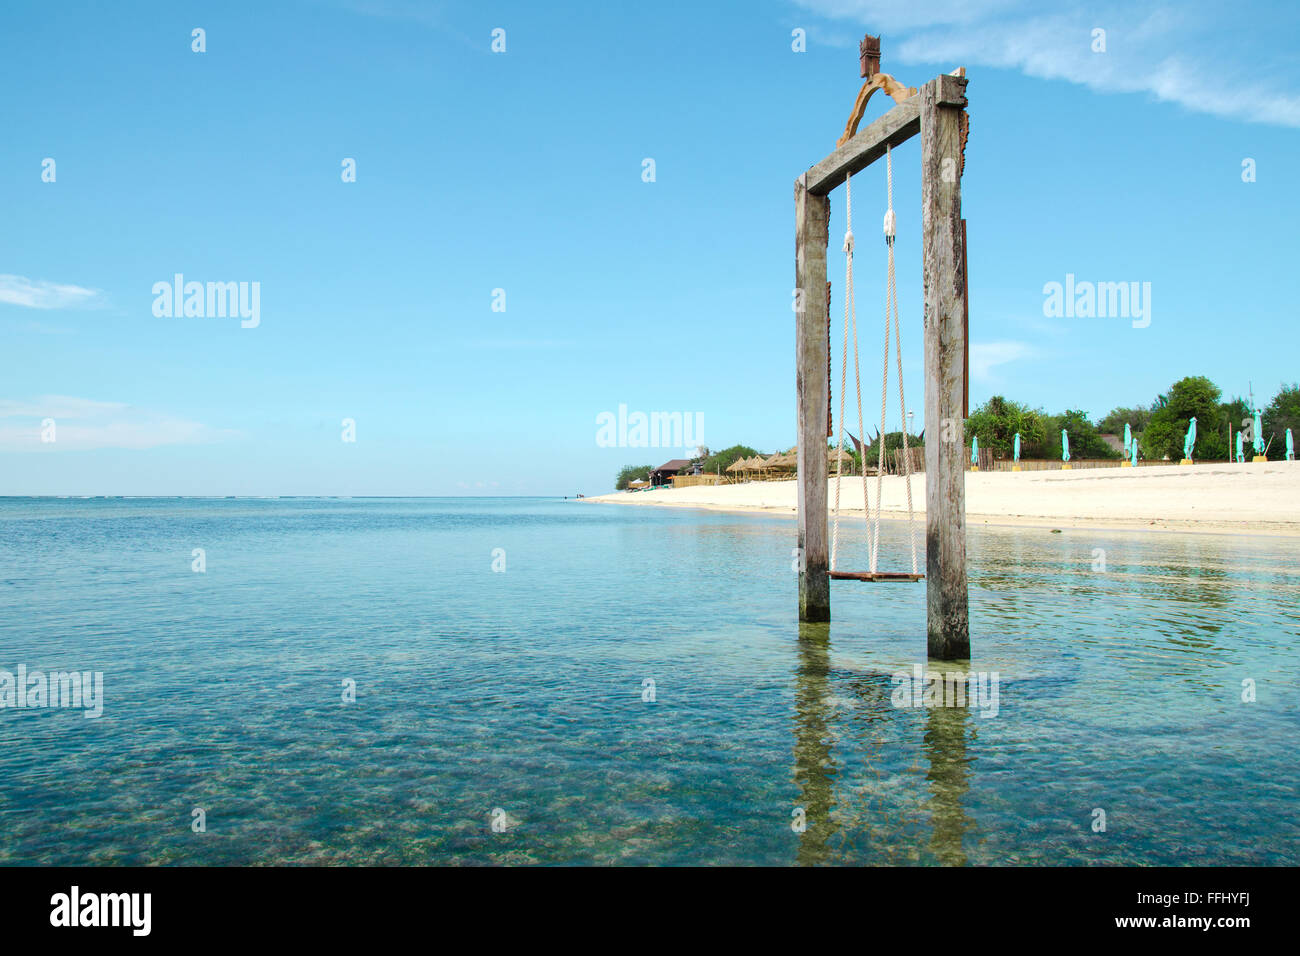 Bali, Indonesien. Exotischen Strand. Schaukel liegt im Ozean in der Nähe  der Insel Gili. Stock Bild Stockfotografie - Alamy